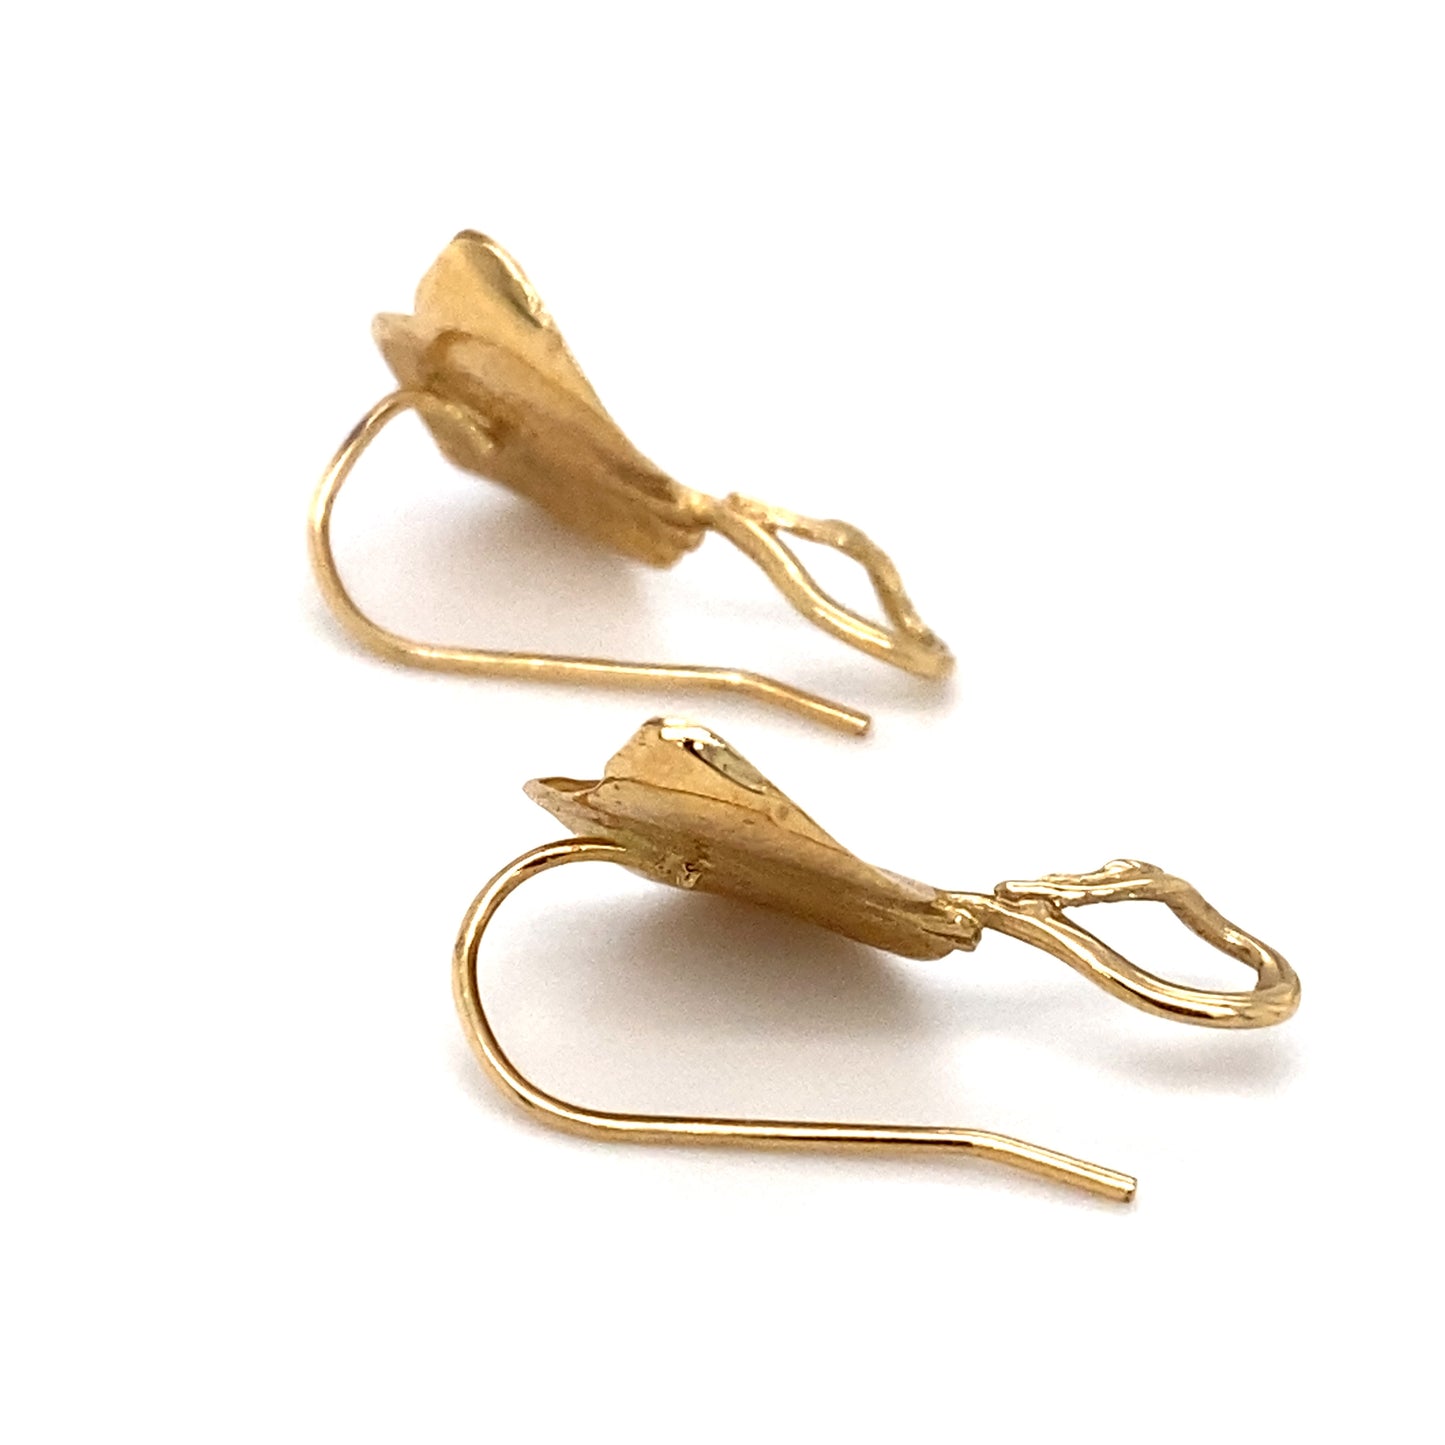 Circa 1950s Stingray Dangle Earrings in 14K Gold